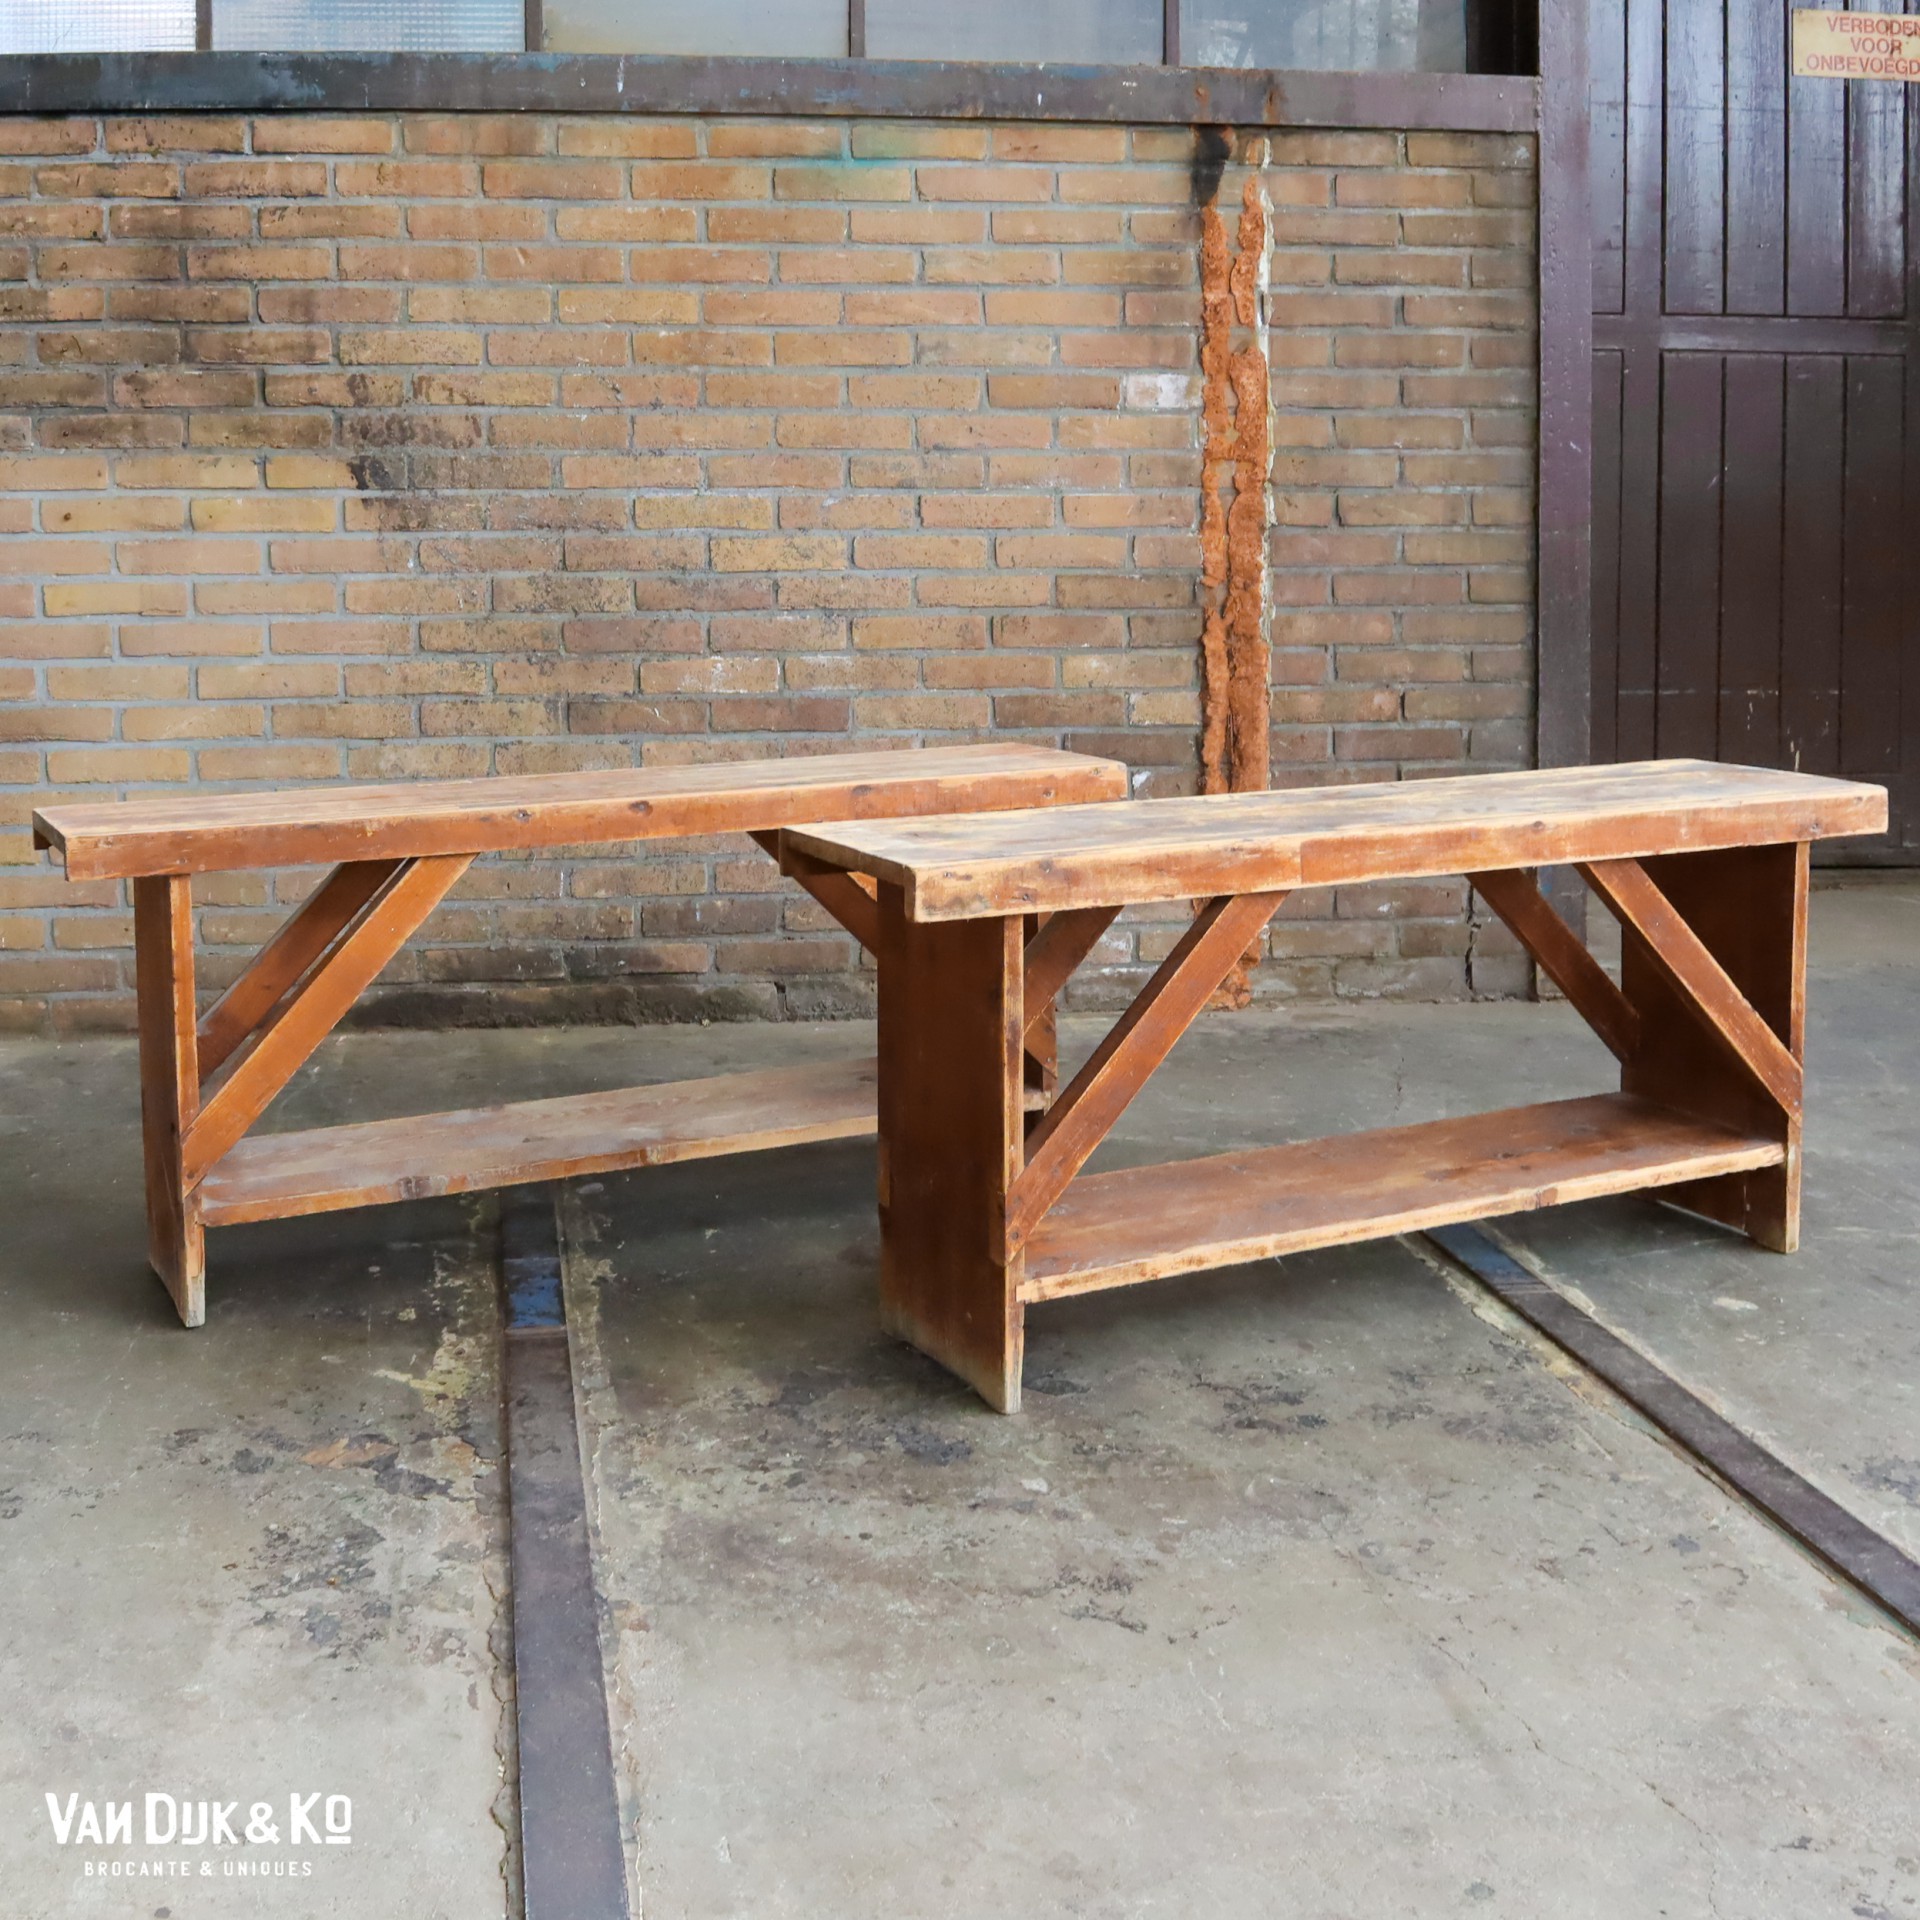 Postbode kip Vergevingsgezind Brocante houten bankje » Van Dijk & Ko